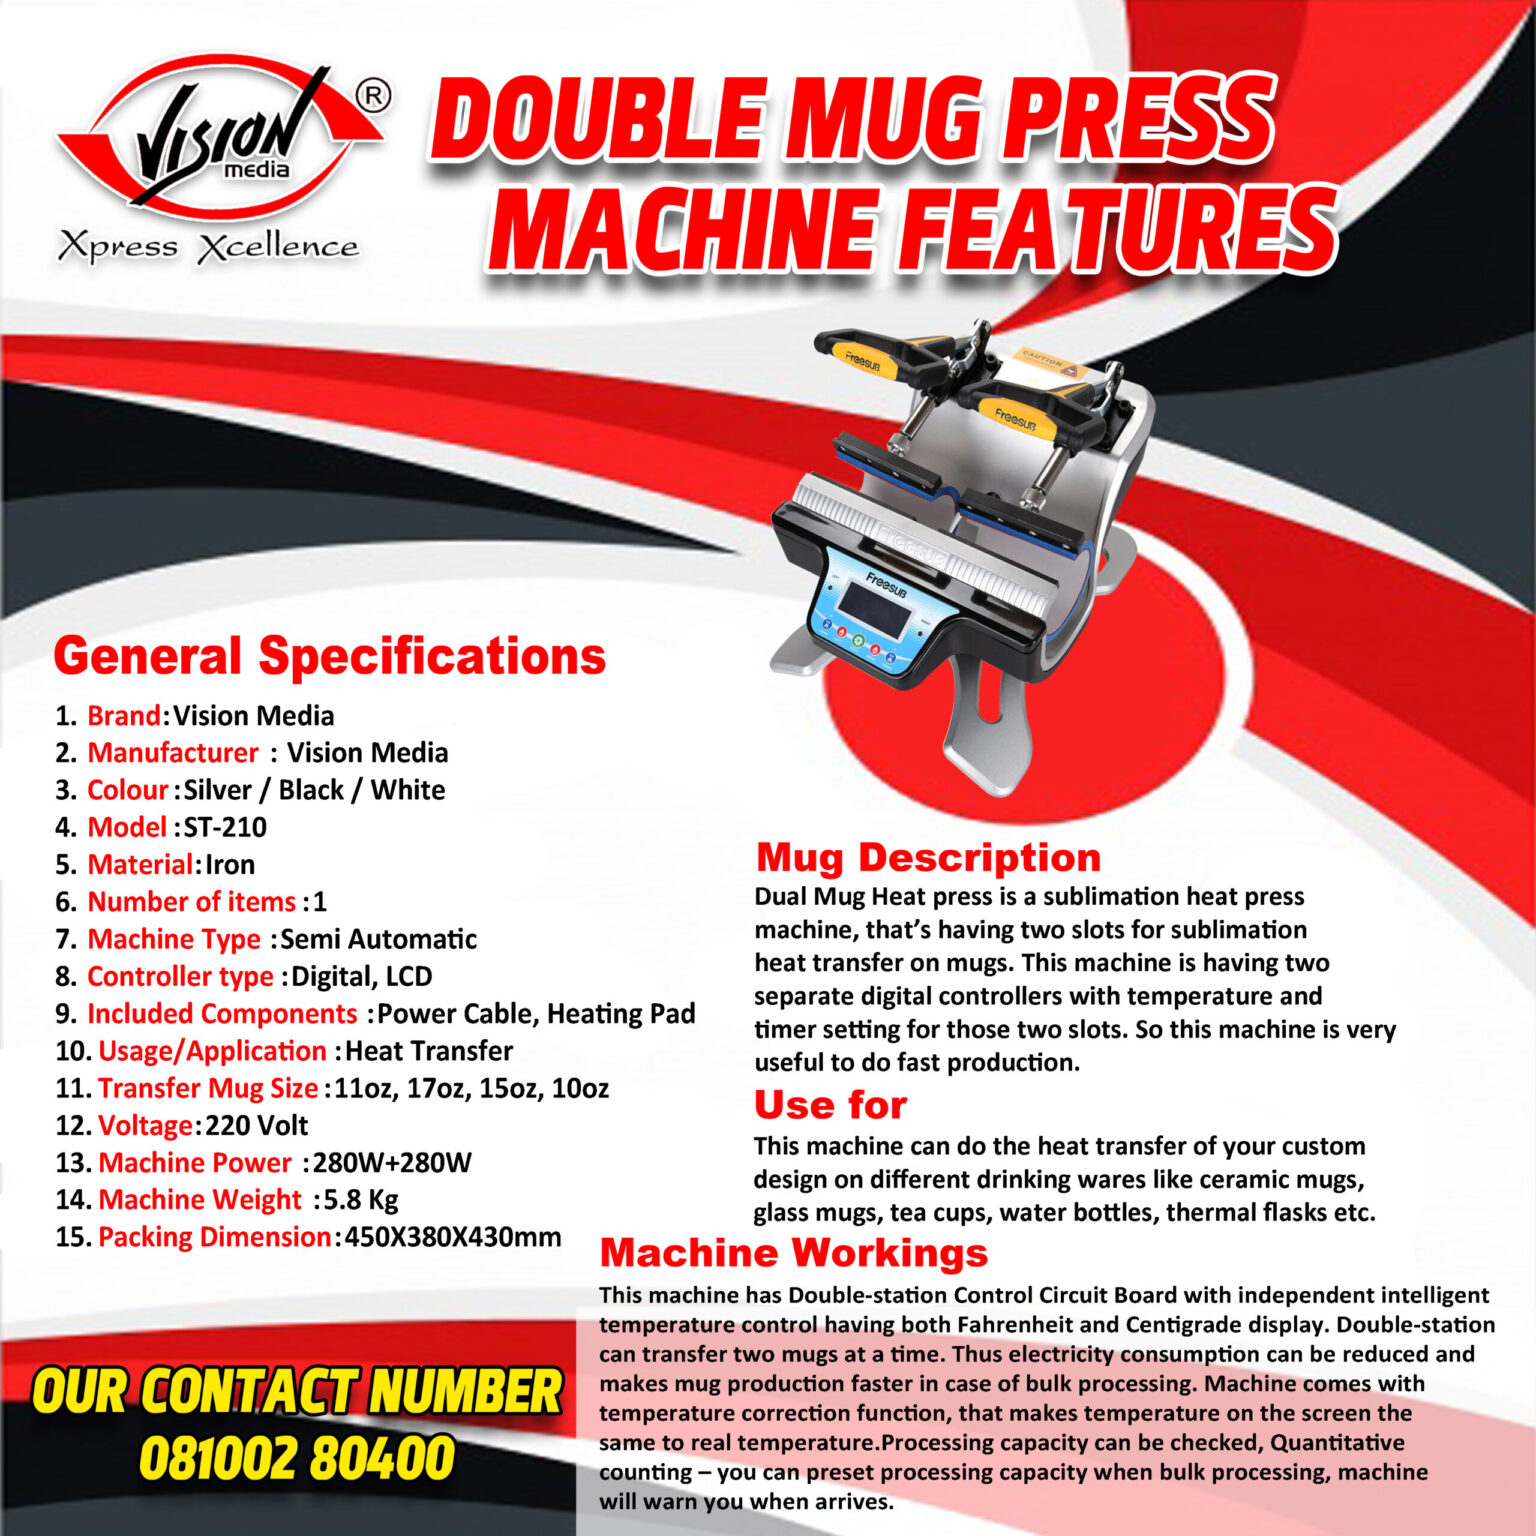 Dual Mug Heat Press